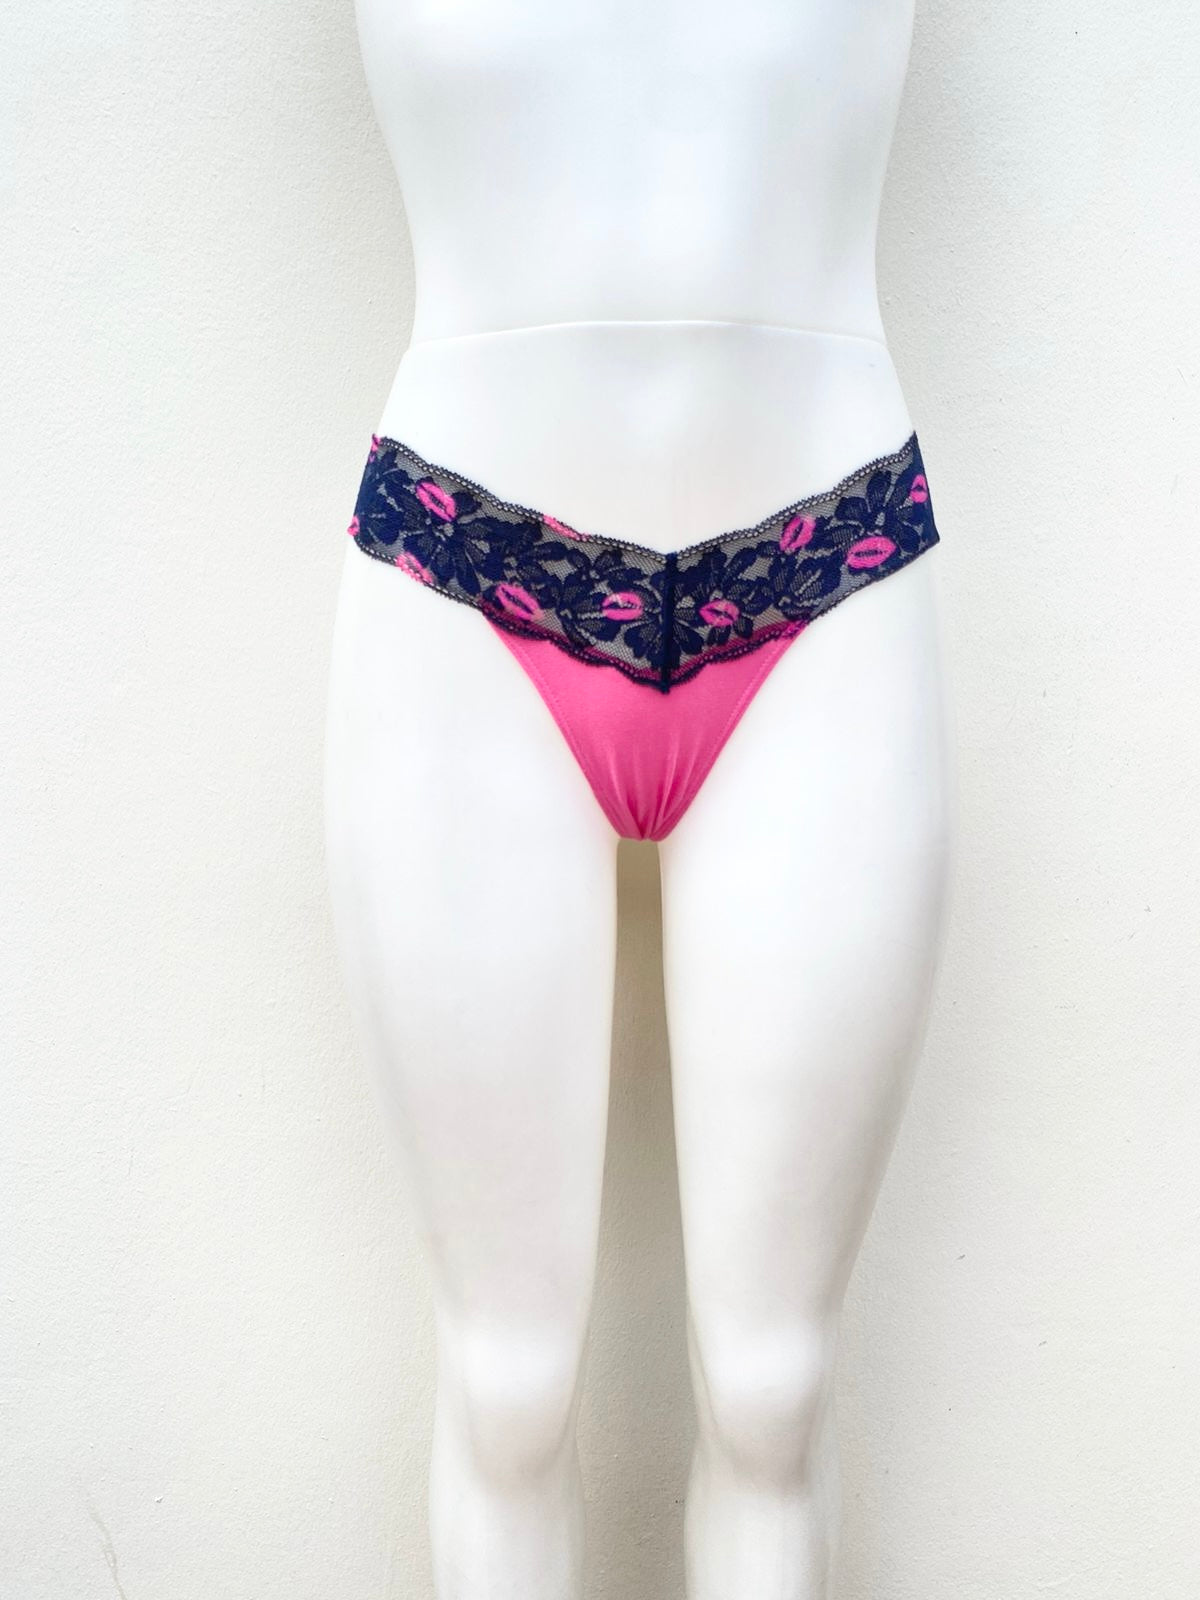 Panti VICTORIA’S Secret Original, color rosa, con encaje azul y con detalles en besos.